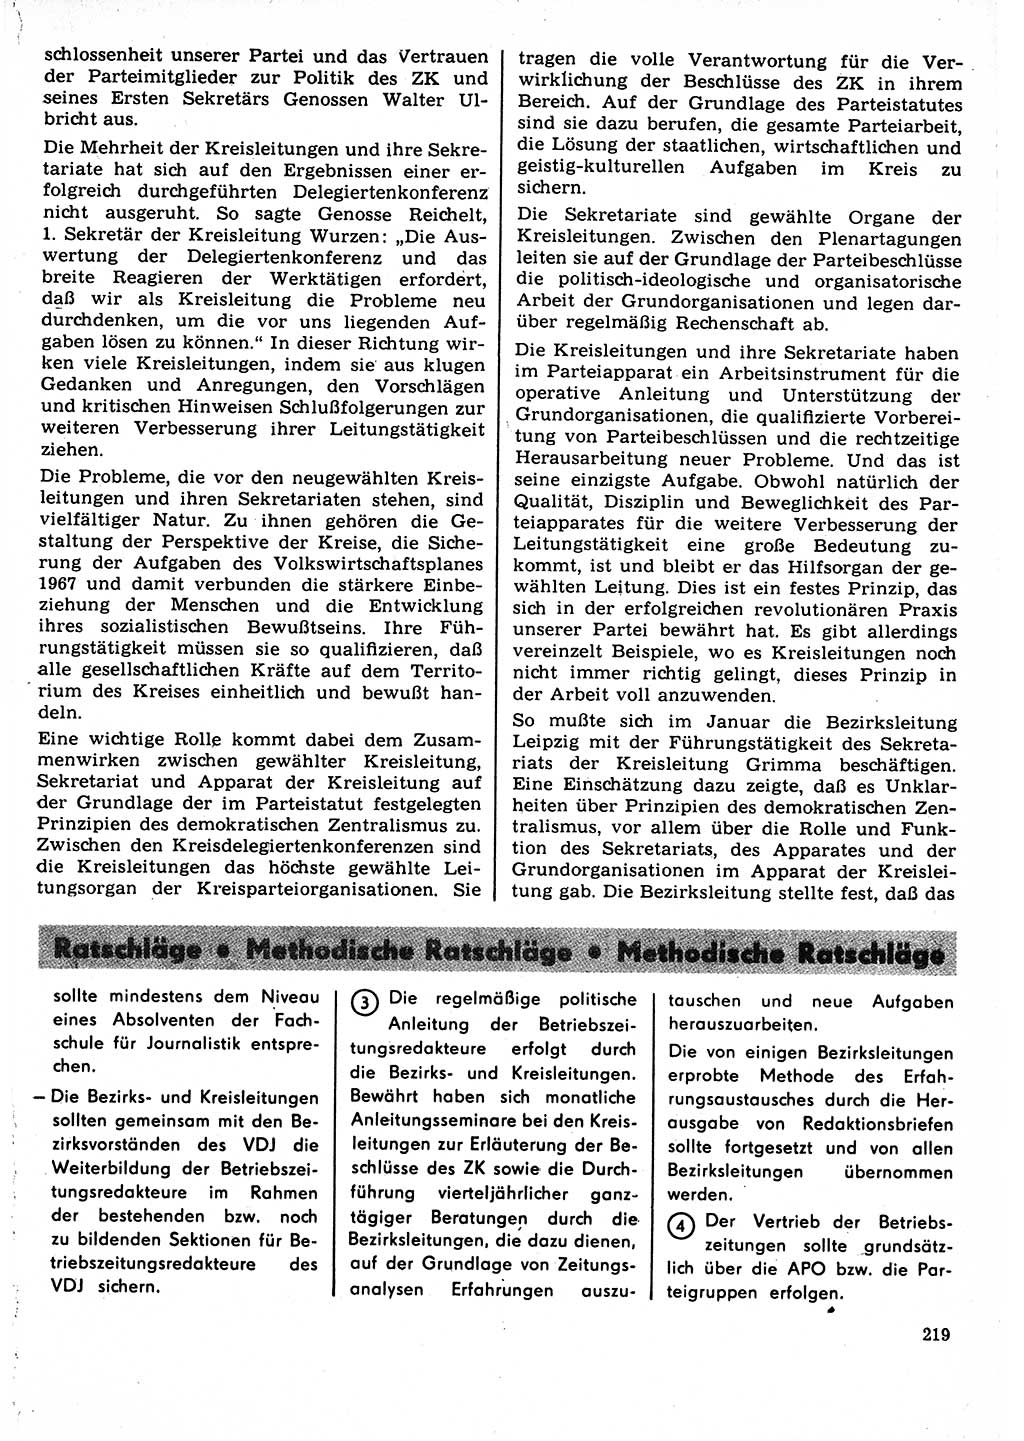 Neuer Weg (NW), Organ des Zentralkomitees (ZK) der SED (Sozialistische Einheitspartei Deutschlands) für Fragen des Parteilebens, 22. Jahrgang [Deutsche Demokratische Republik (DDR)] 1967, Seite 219 (NW ZK SED DDR 1967, S. 219)